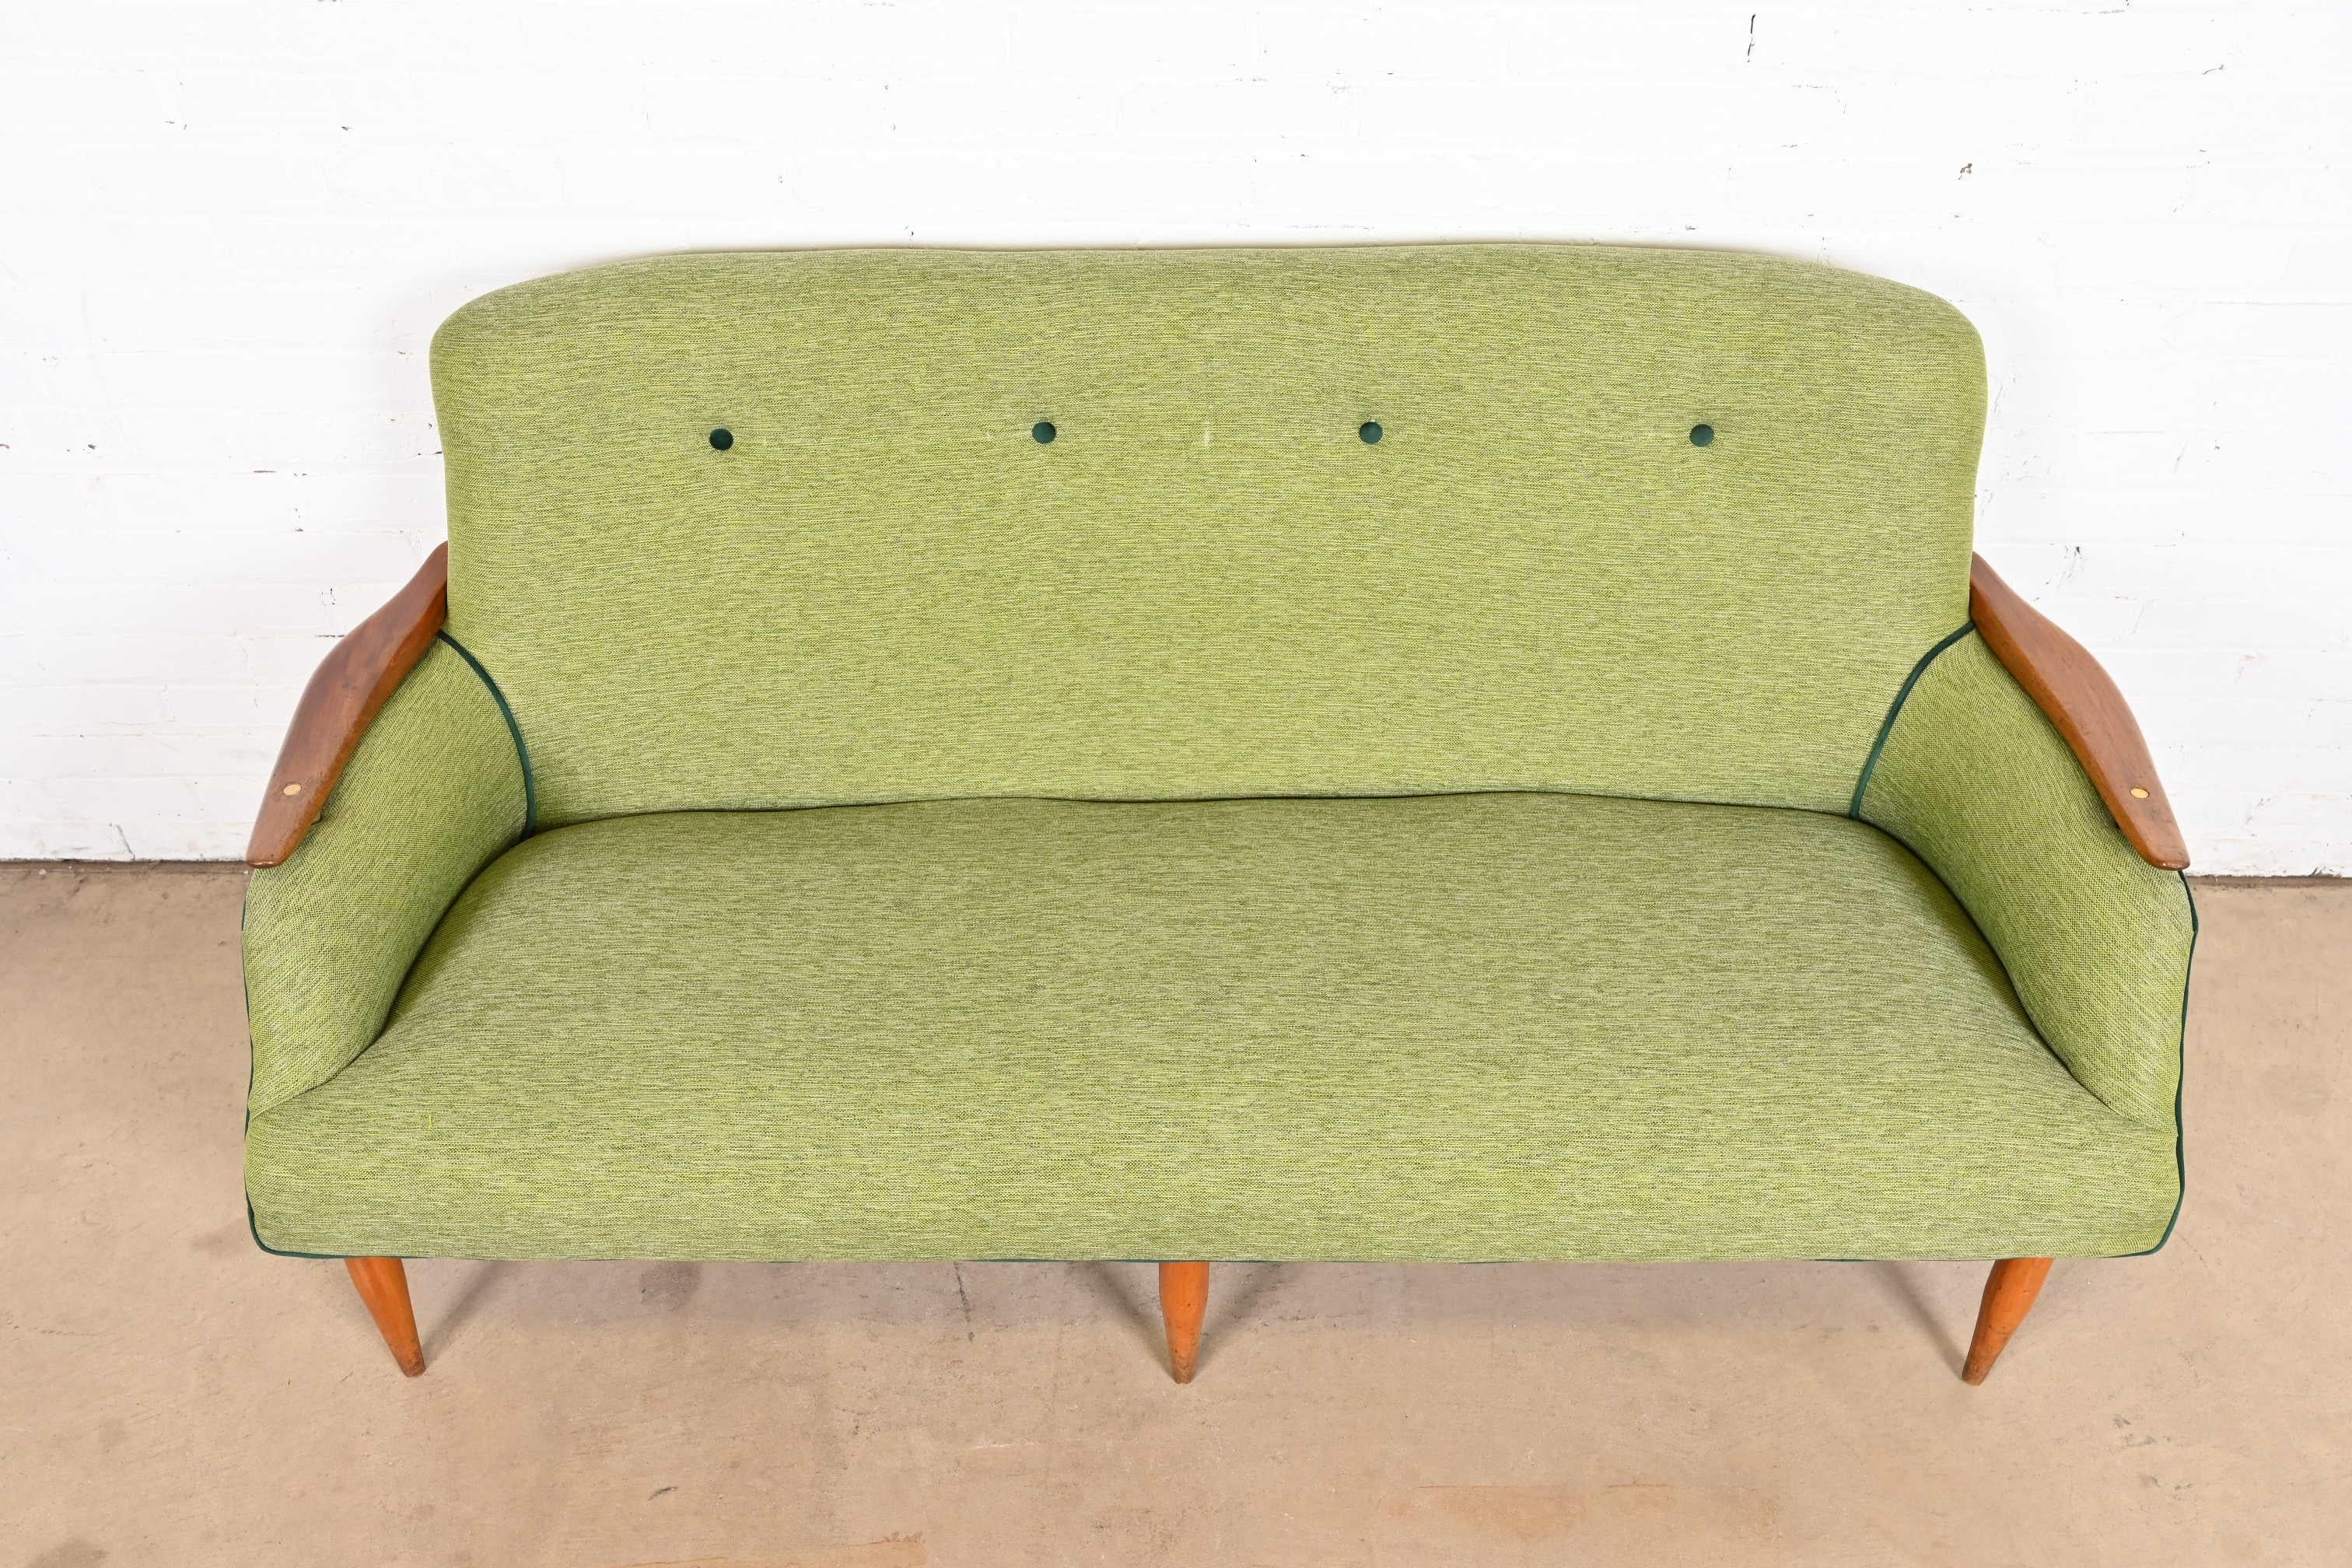 Finn Juhl Danish Modern Upholstered Sculpted Teak Sofa, 1950s For Sale 2